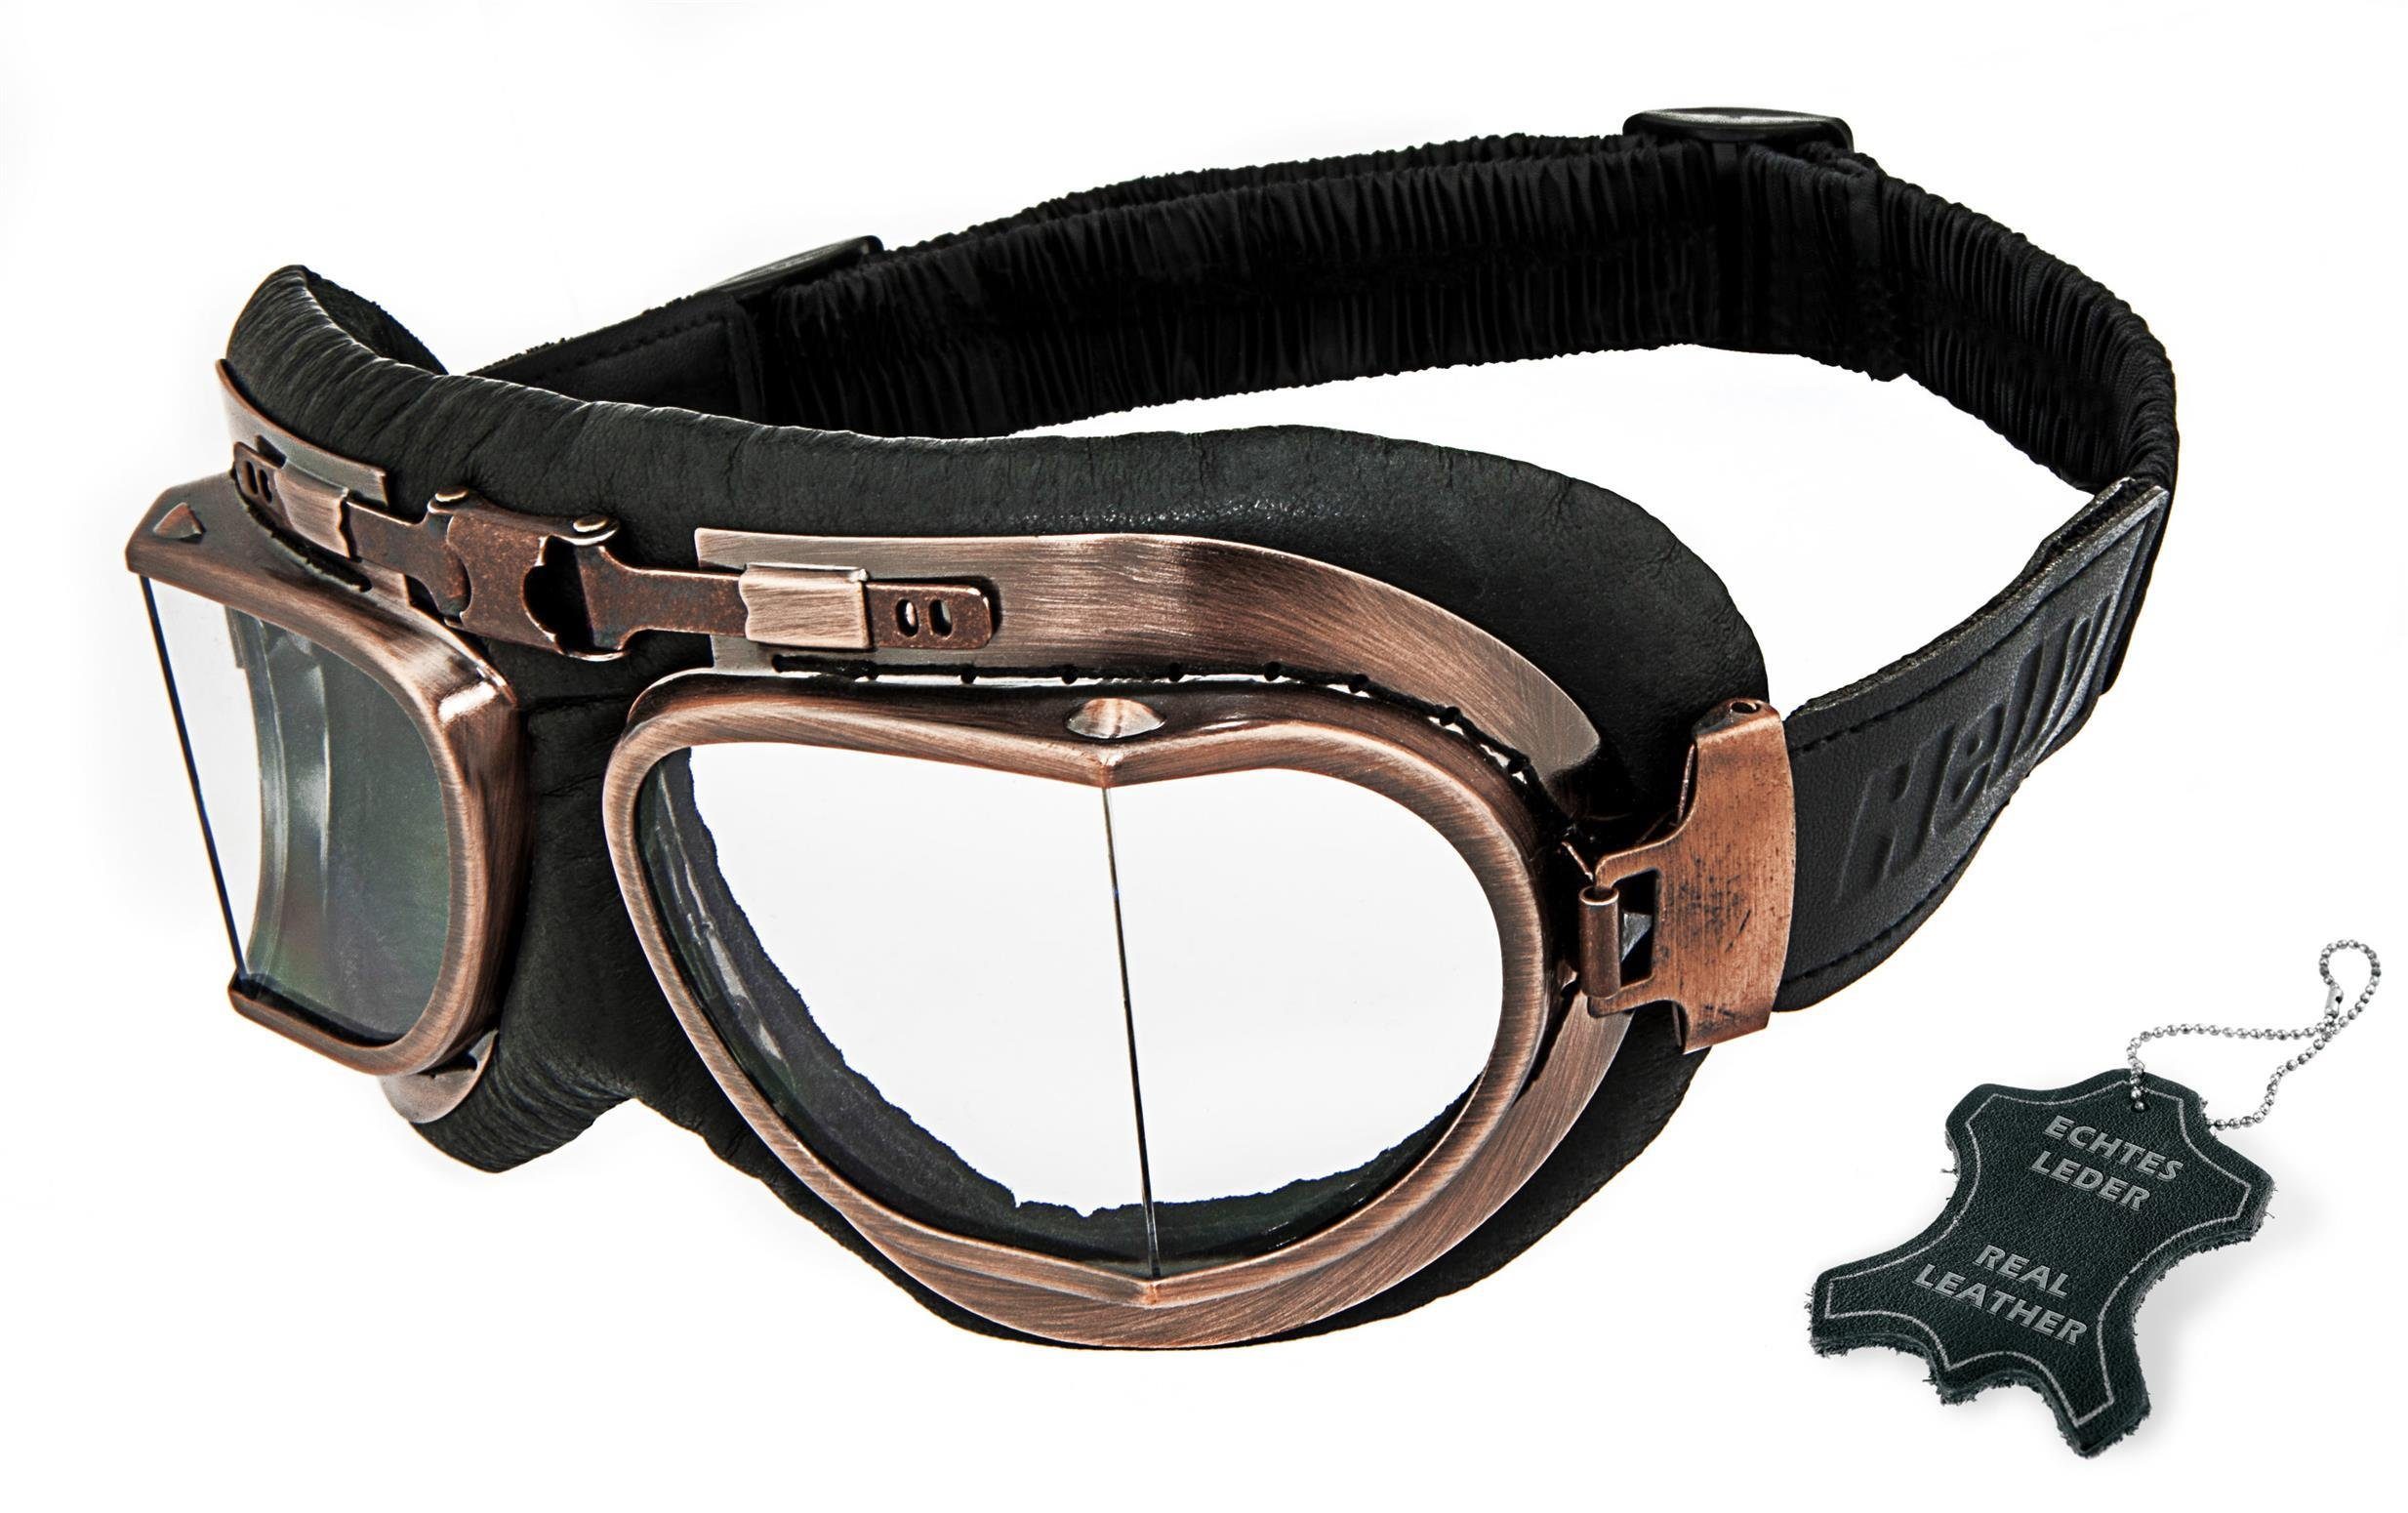 Helly - No.1 Bikereyes Motorradbrille 1410ak-n, Motorradbrille mit Kunststoff-Sicherheitsglas